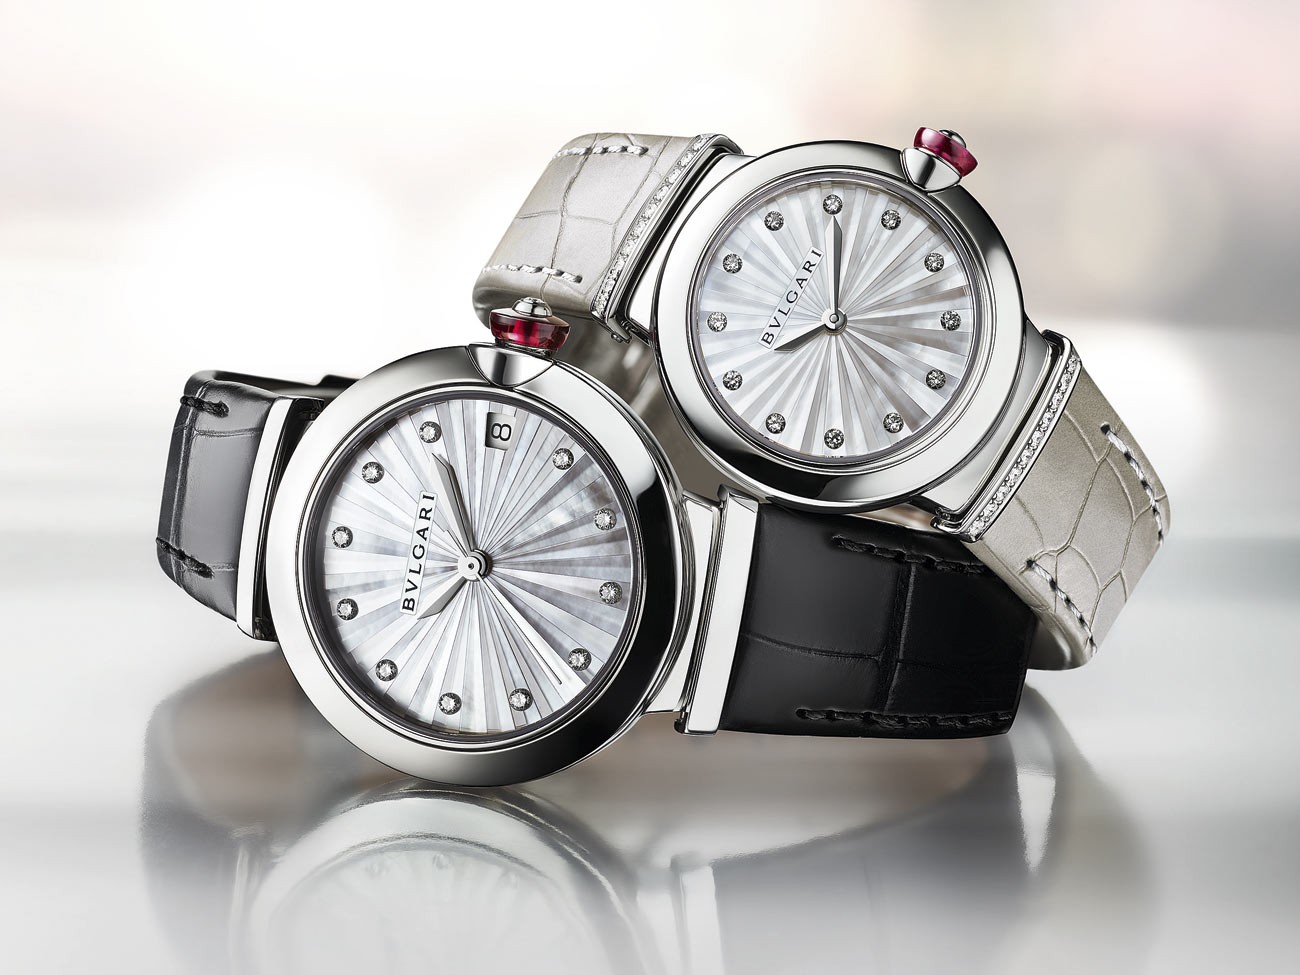 Novos modelos do Lvcea, novidade de 2021 dos relógios da Bulgari  (Foto: Divulgação)